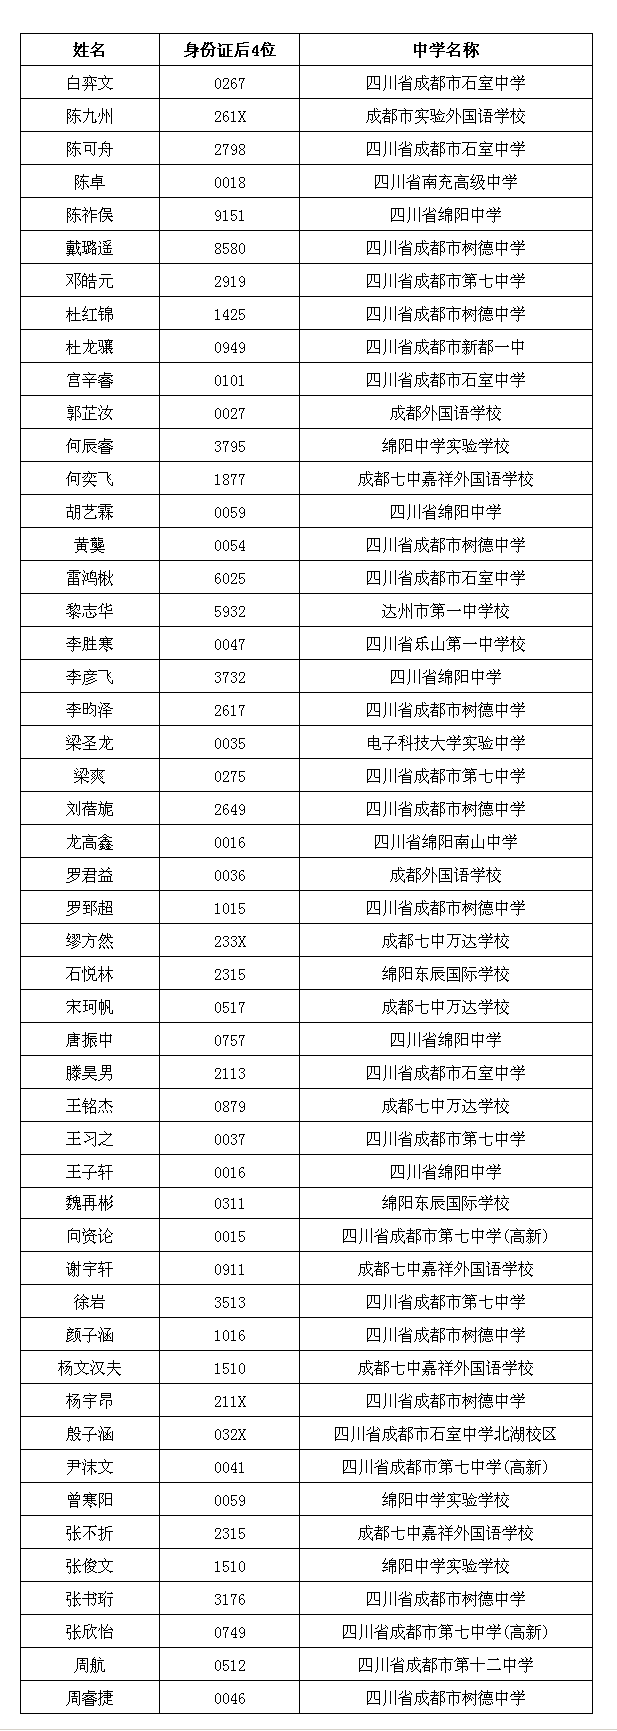 南方科技大学2019年新生录取名单（四川）